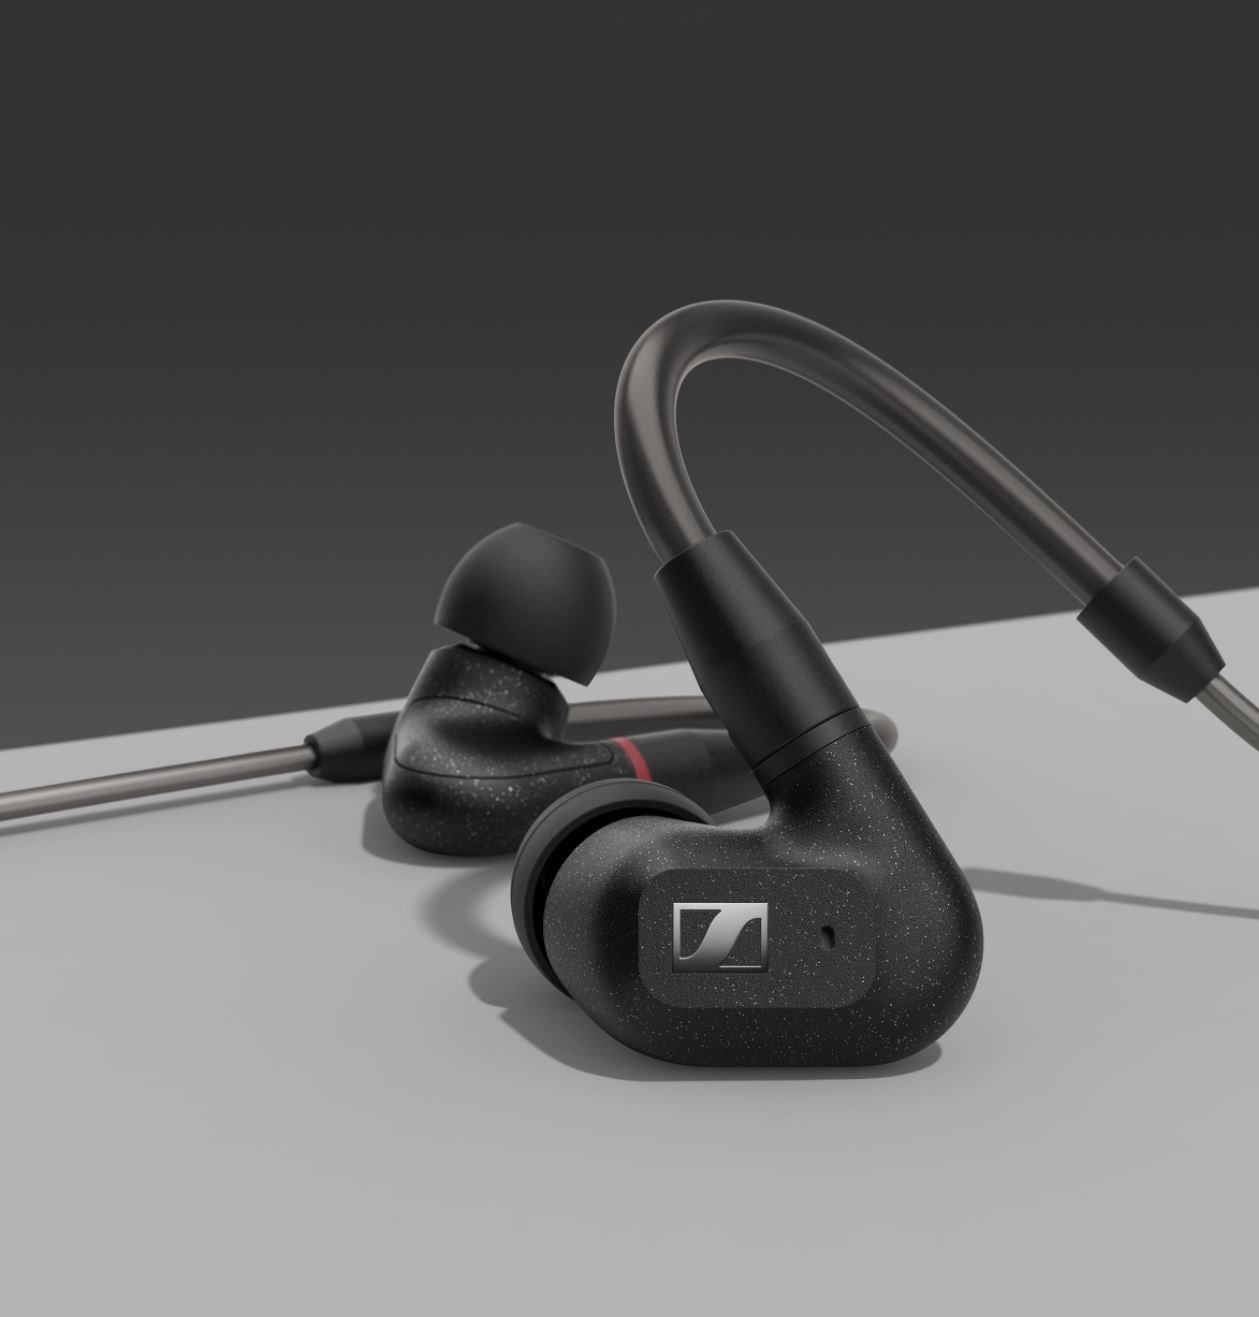 sennheiser Sennheiser IE 300 Headphones, Incredible Audio But Miss Key Features